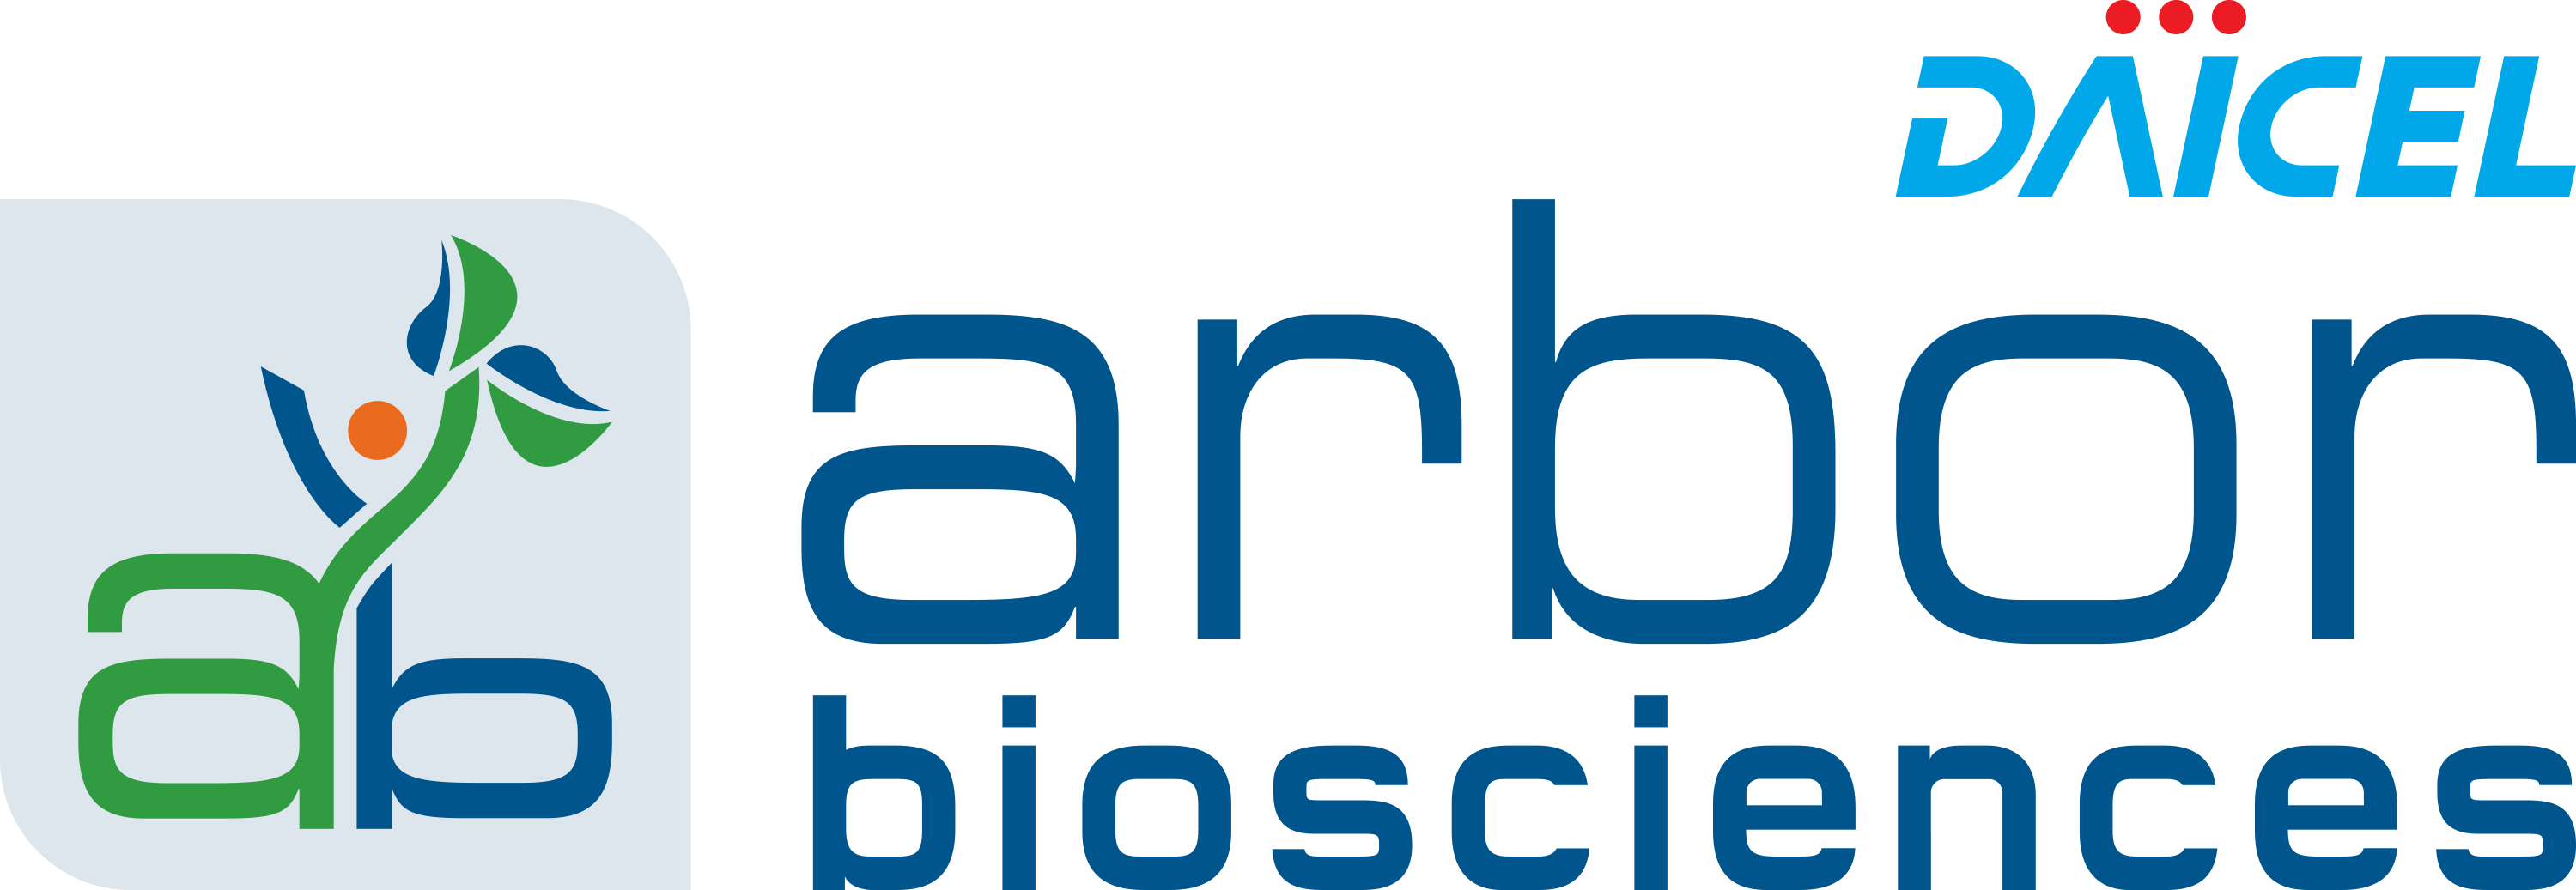 Daicel_arborbio_logo